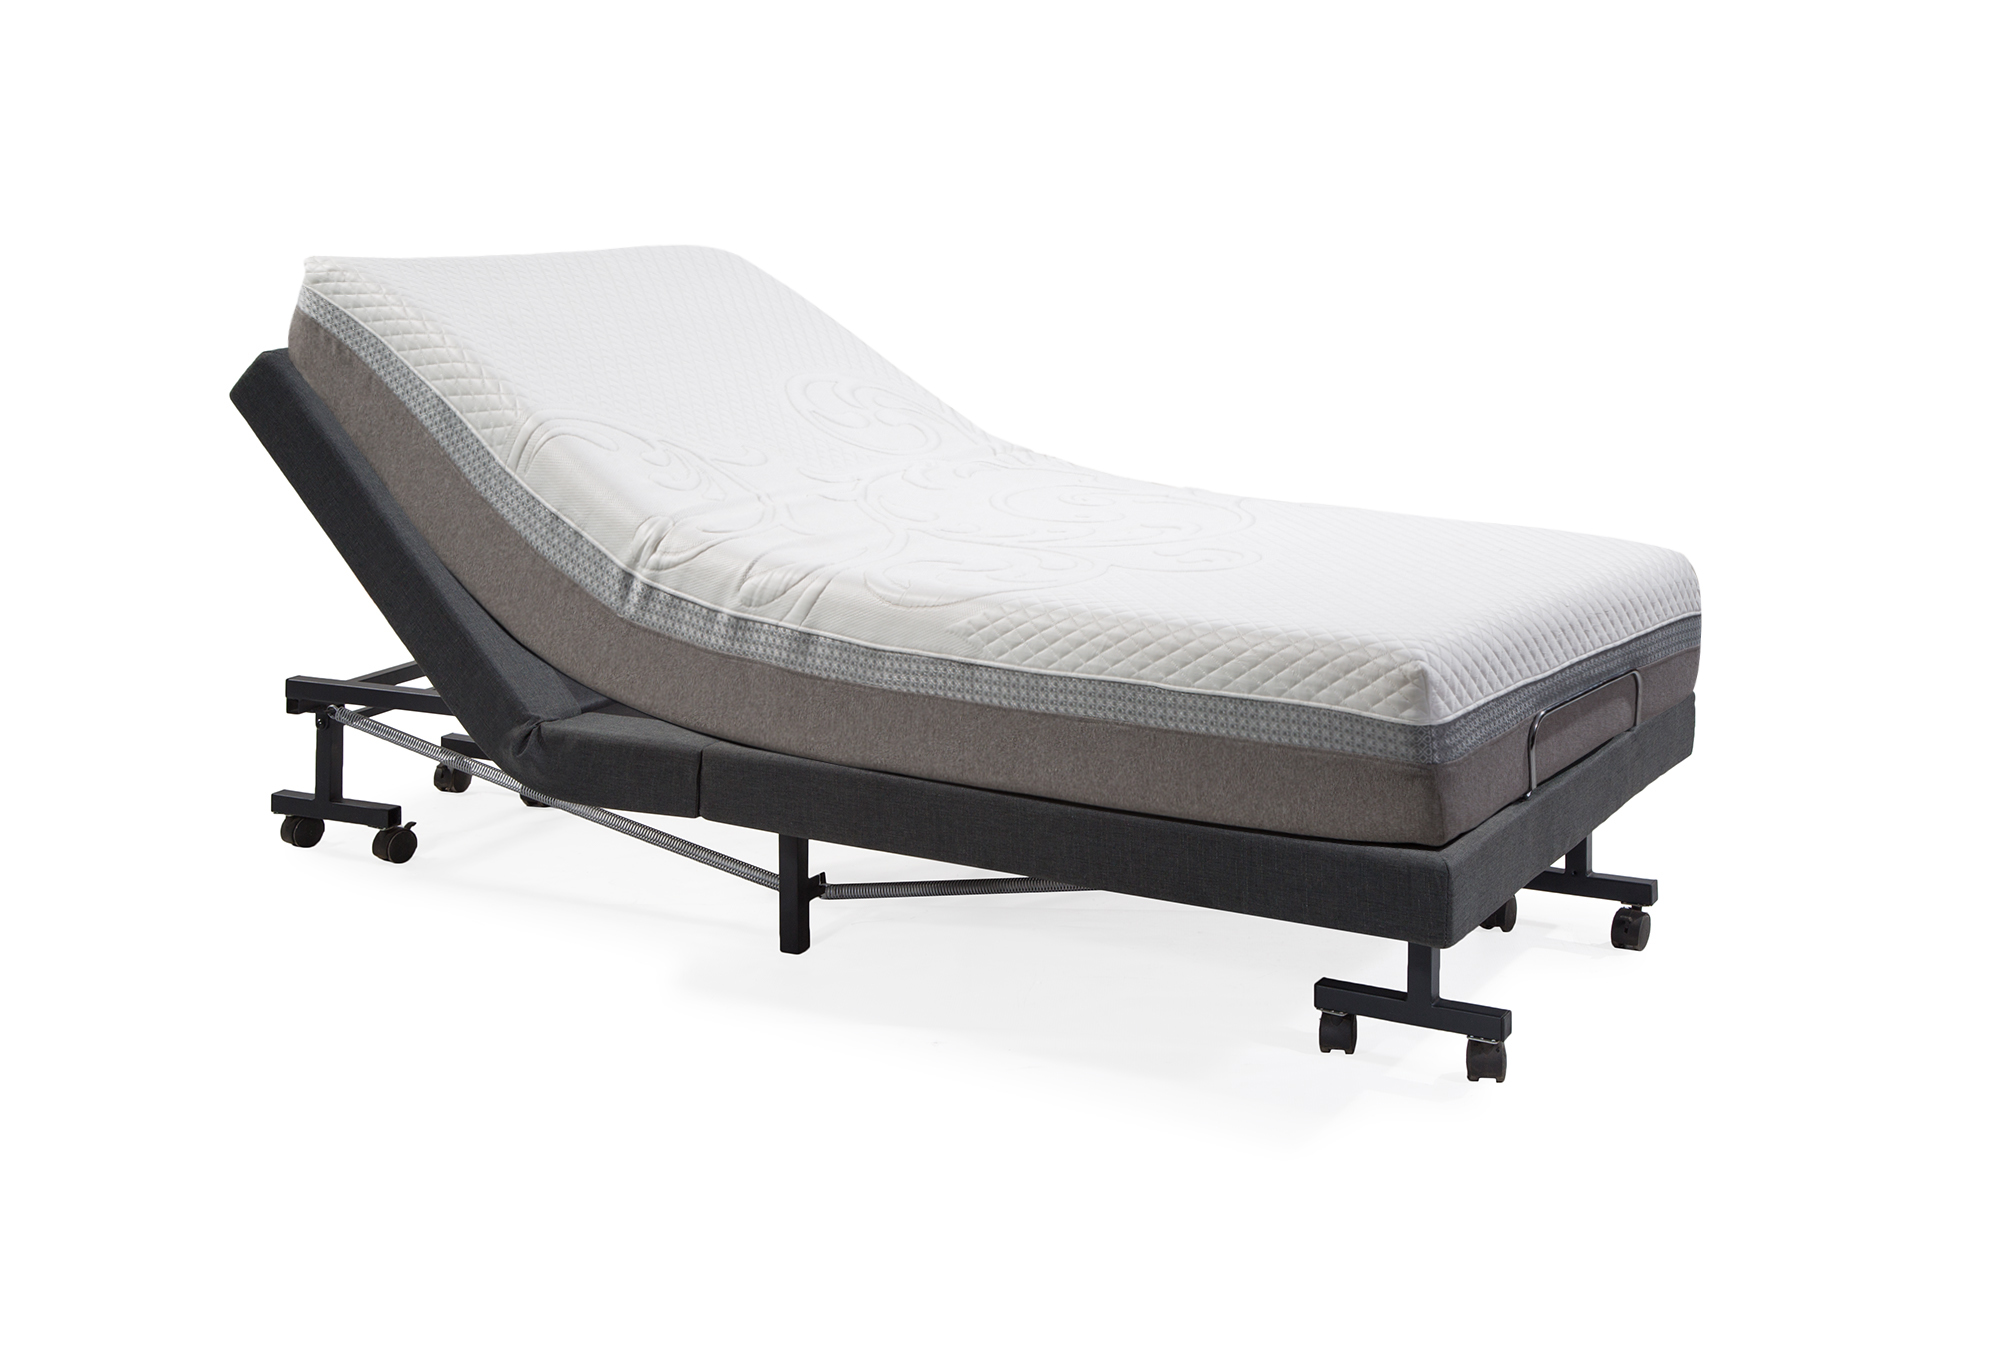 智能电动床 - 科技·因你而来 - 美国唛赛床垫丨睡眠·科技 - 高宝睡眠科技有限公司